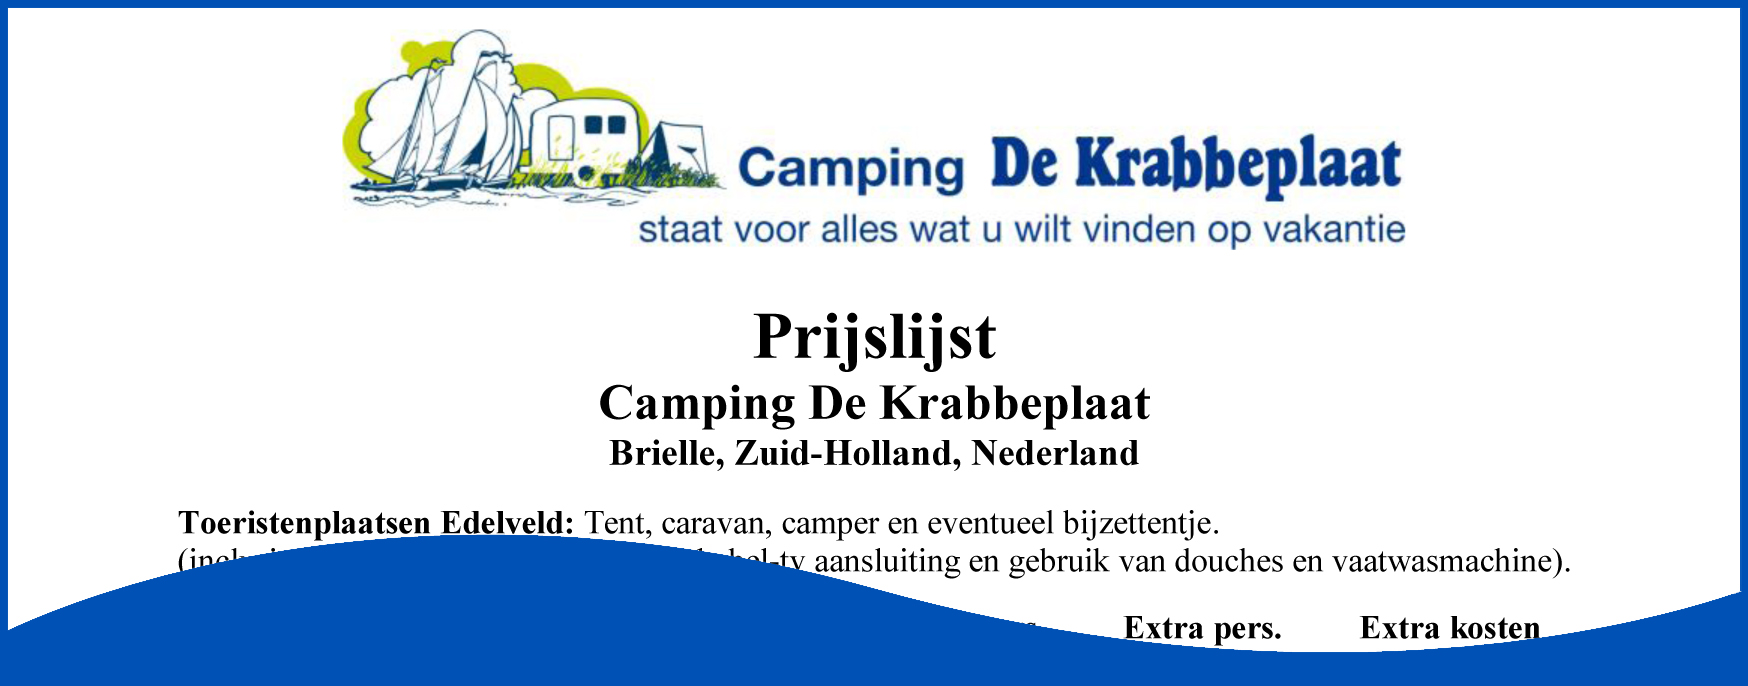 Prijslijst Camping De Krabbeplaat